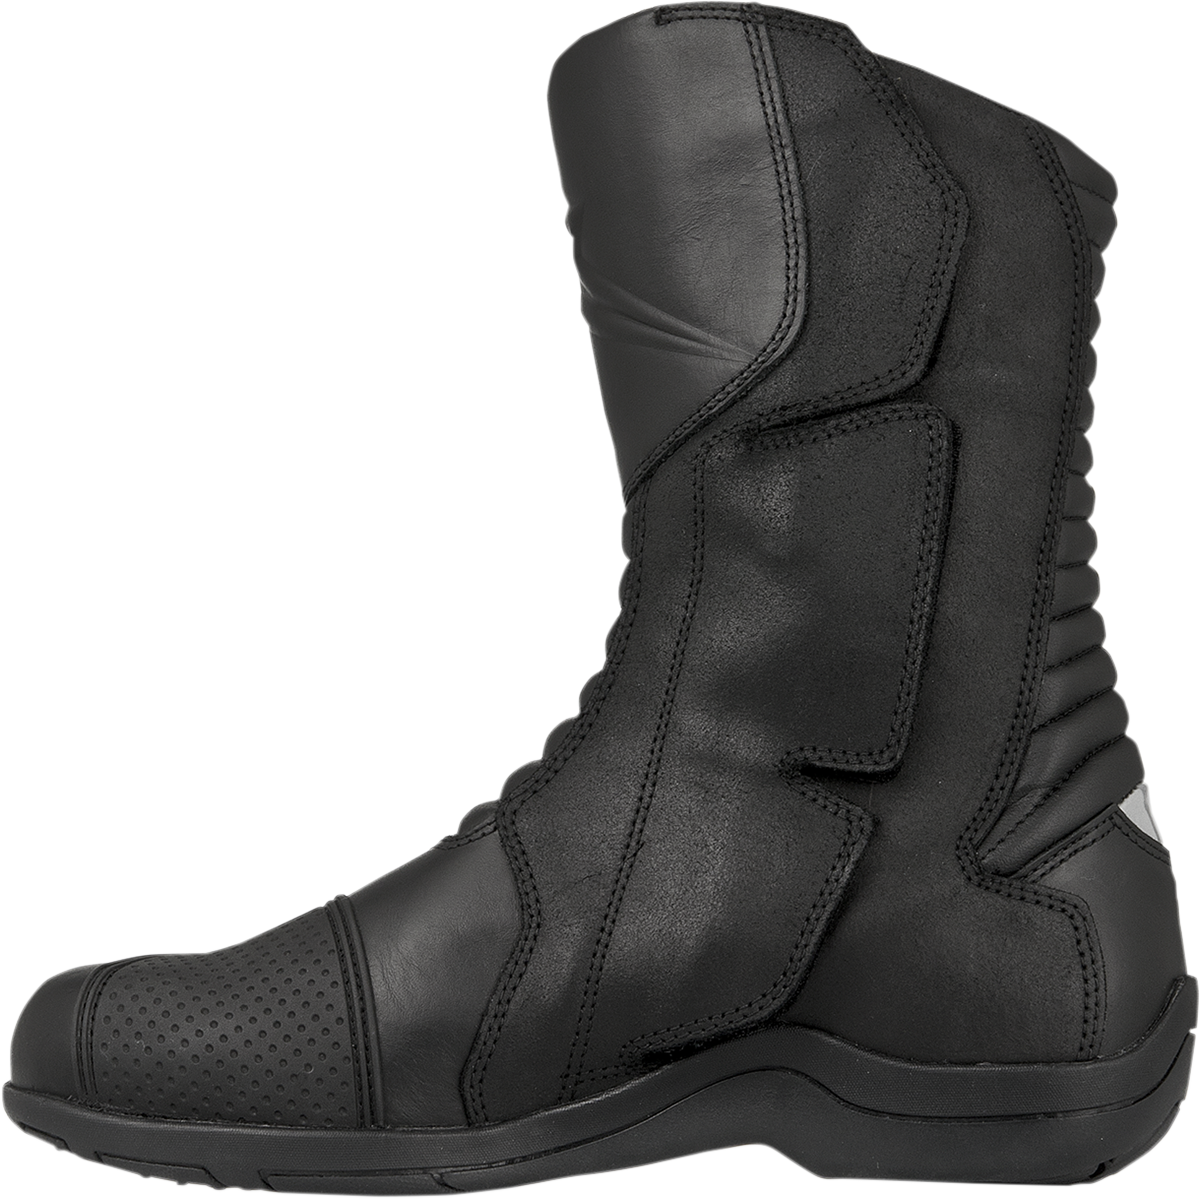 ALPINESTARS Web Gore-Tex Boots - Black - US 9 / EU 43 2335013-10-43